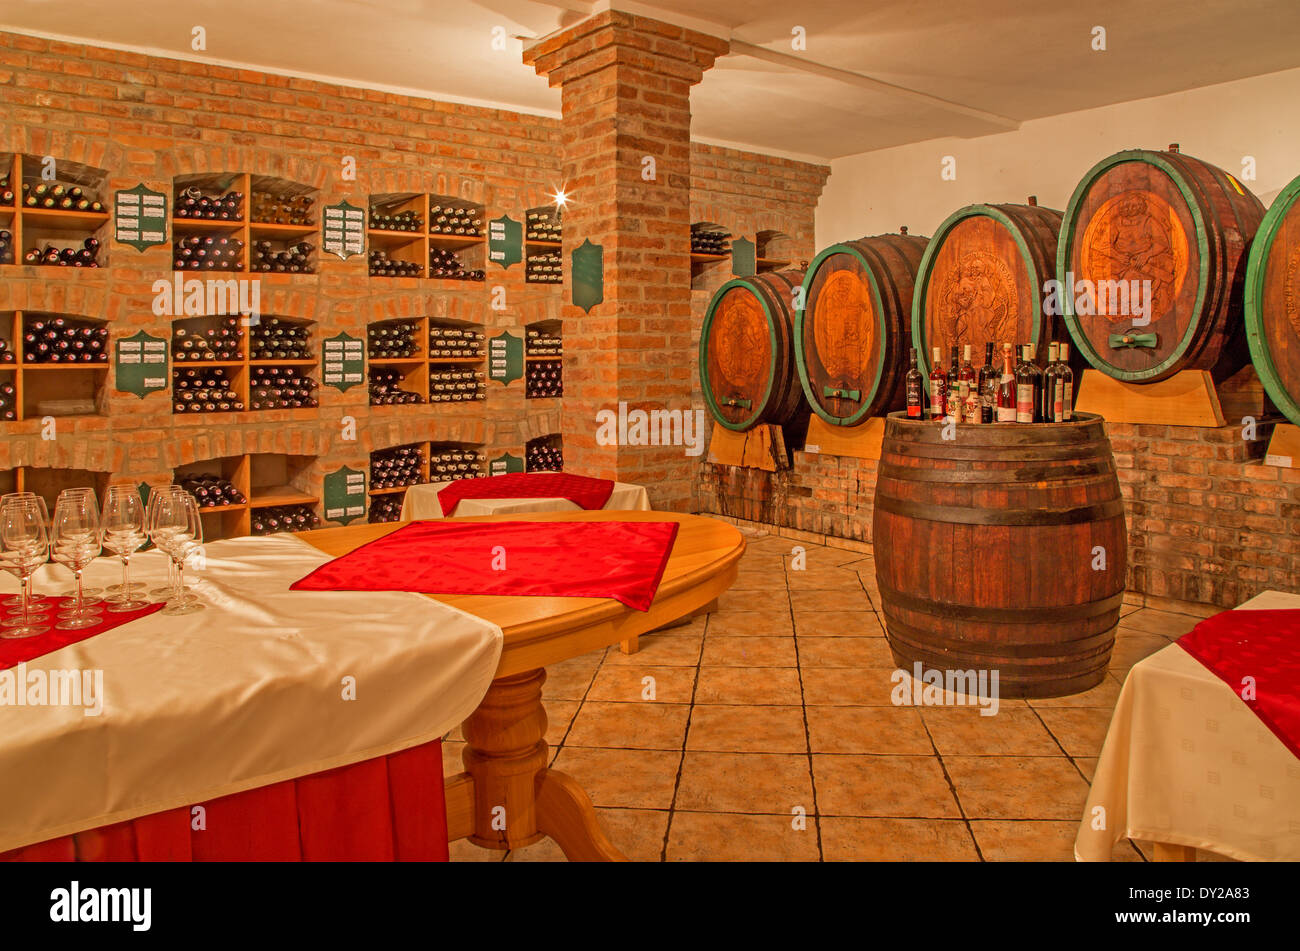 BRATISLAVA, Slovacchia - 30 gennaio 2014: interno della cantina di vini di grande produttore slovacco. Foto Stock